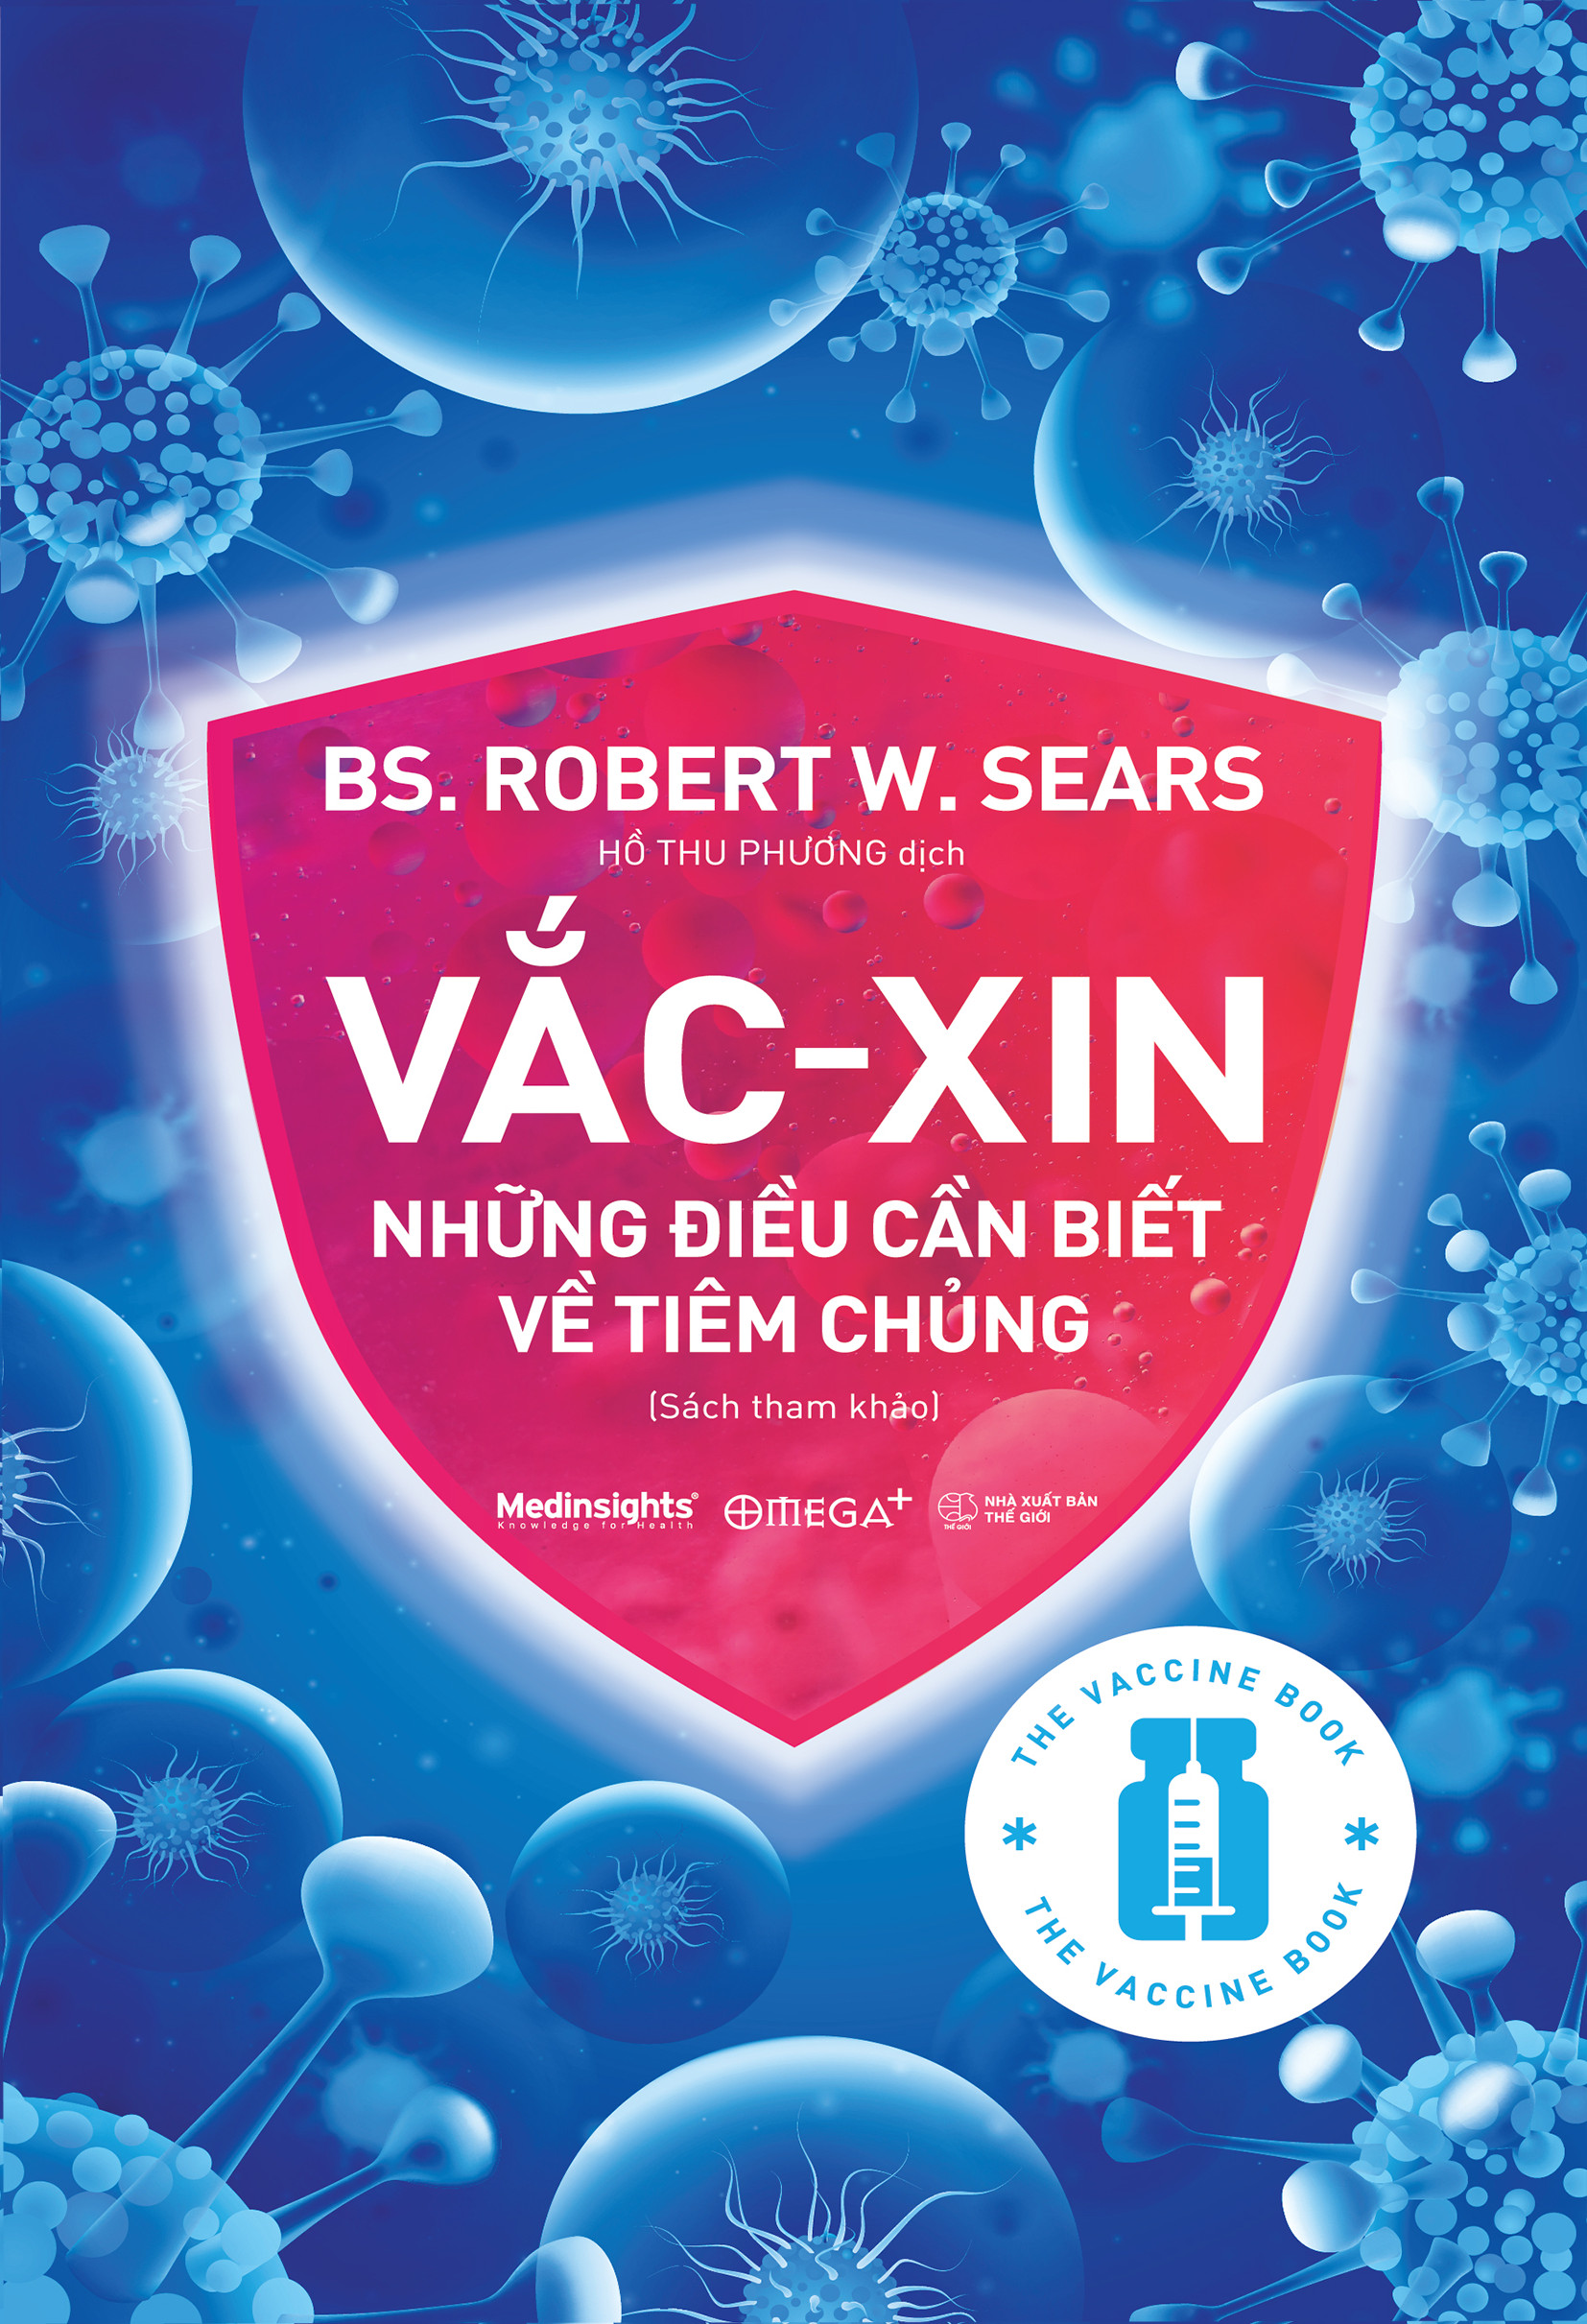 Combo Hoang Mang - Chỉ Dẫn Của Bác Sỹ Để Hiểu Rõ Đúng Sai + Vắc-xin: Những Điều Cần Biết Về Tiêm Chủng